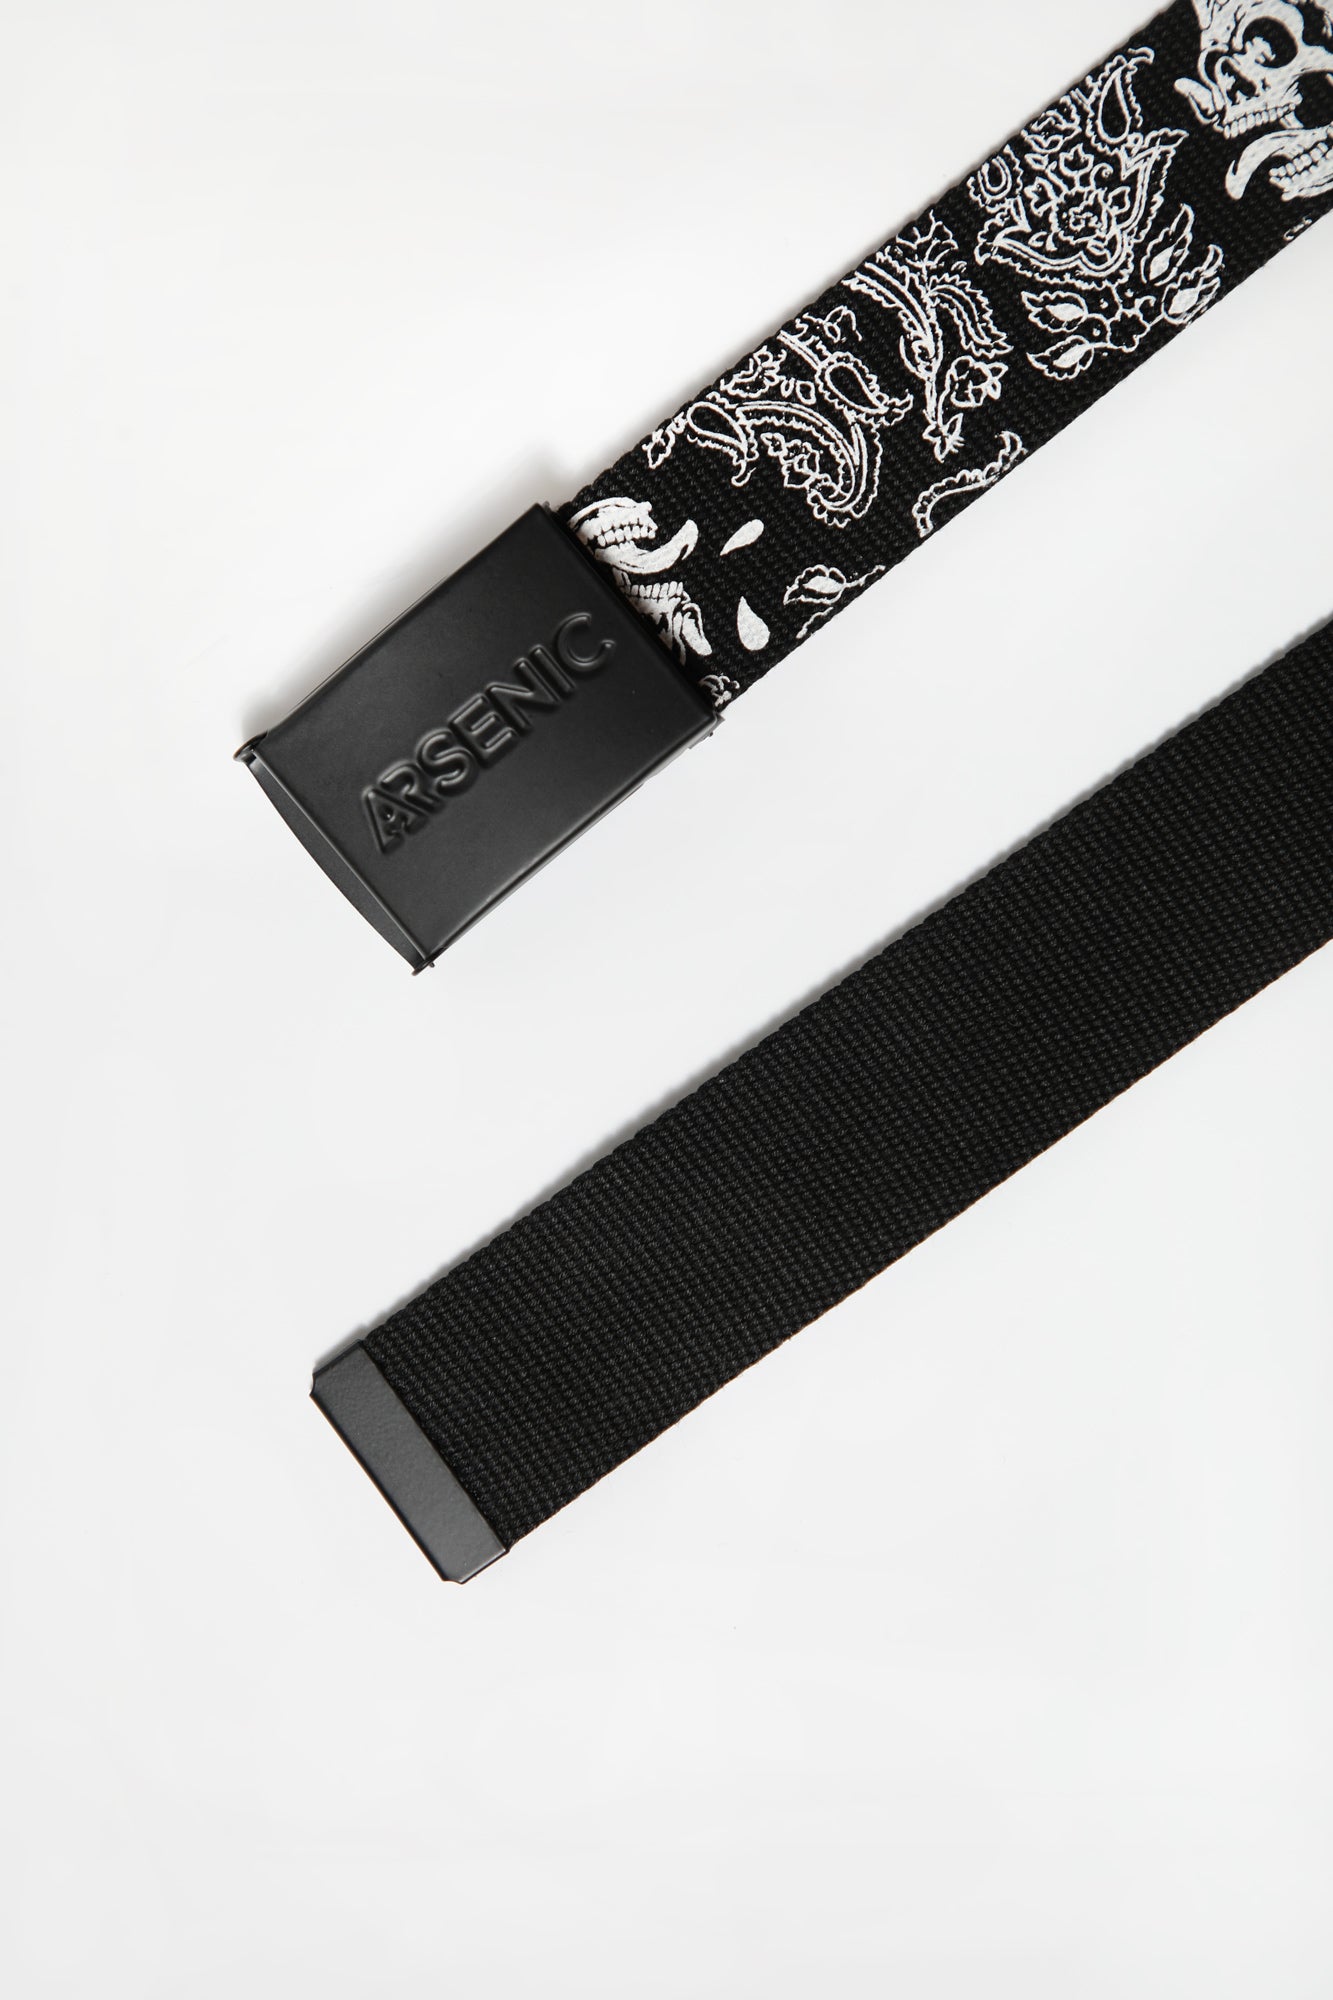 Arsenic Youth Printed Web Belt - Black / O/S